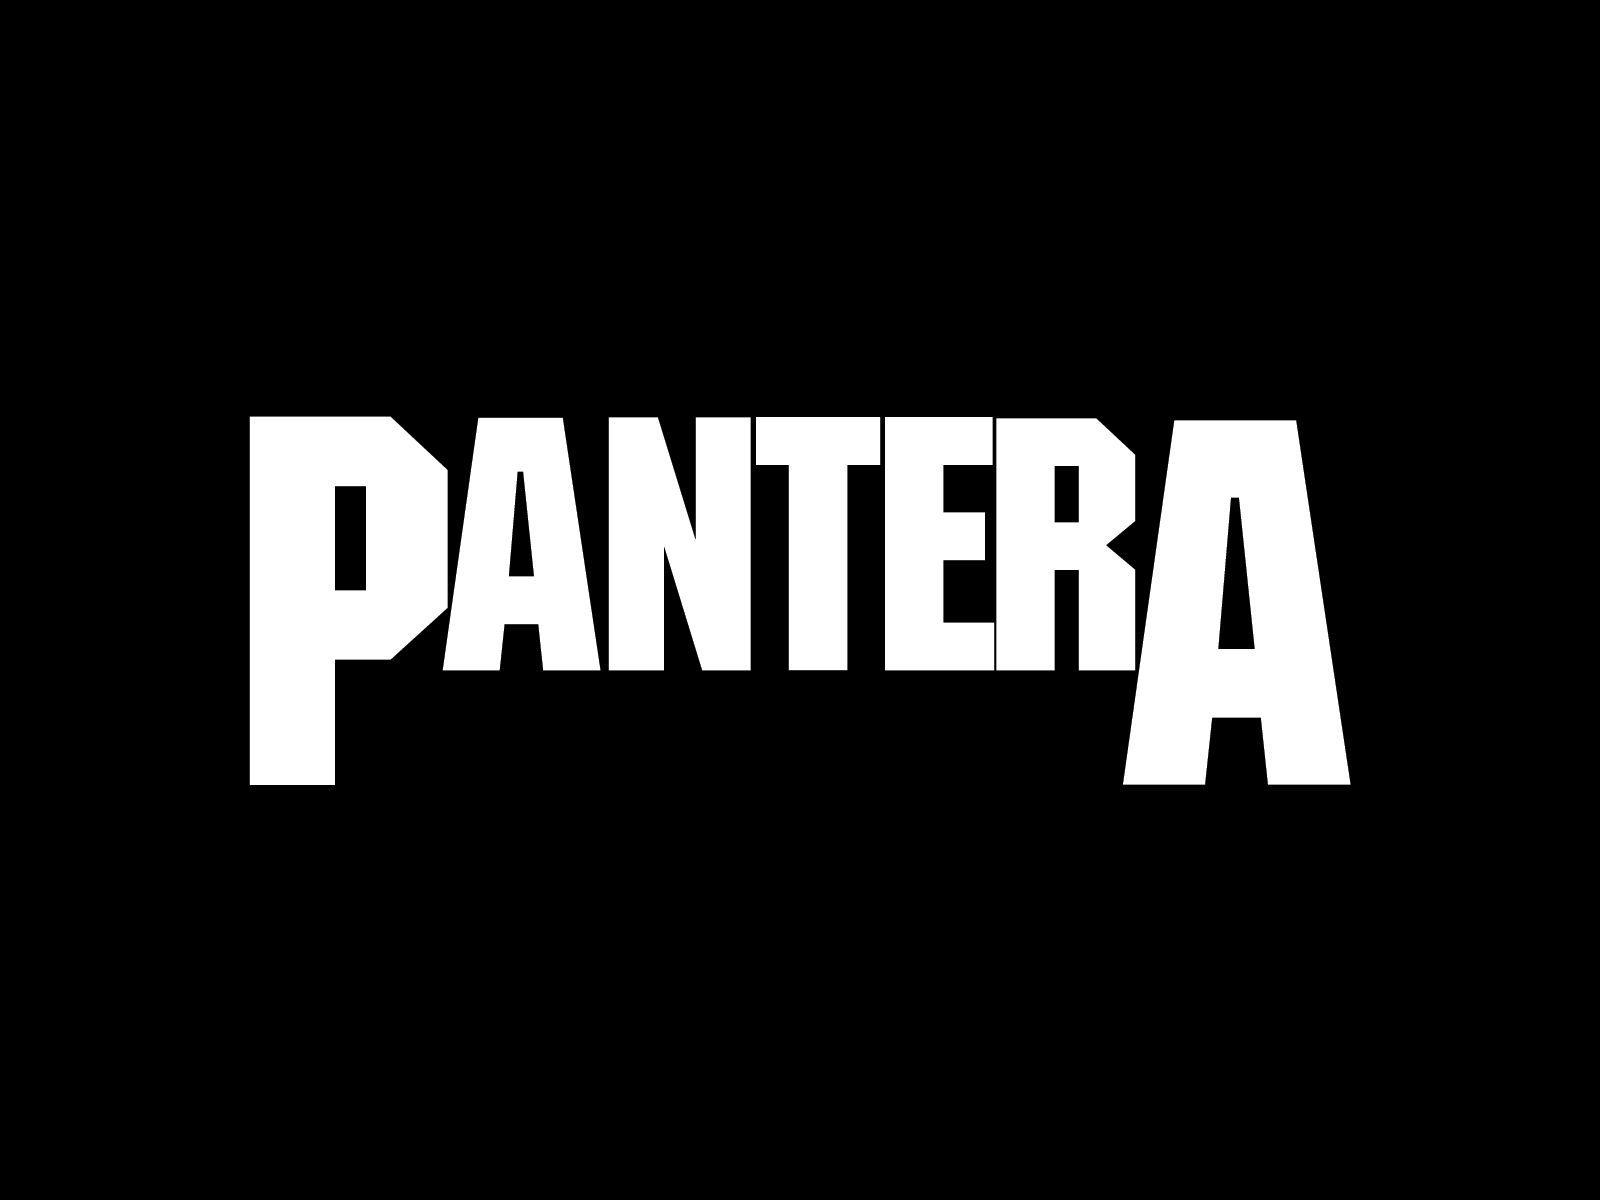 Pantera Logo - Pantera Logo wallpaper | Pantera | Band logos, Metal band logos ...